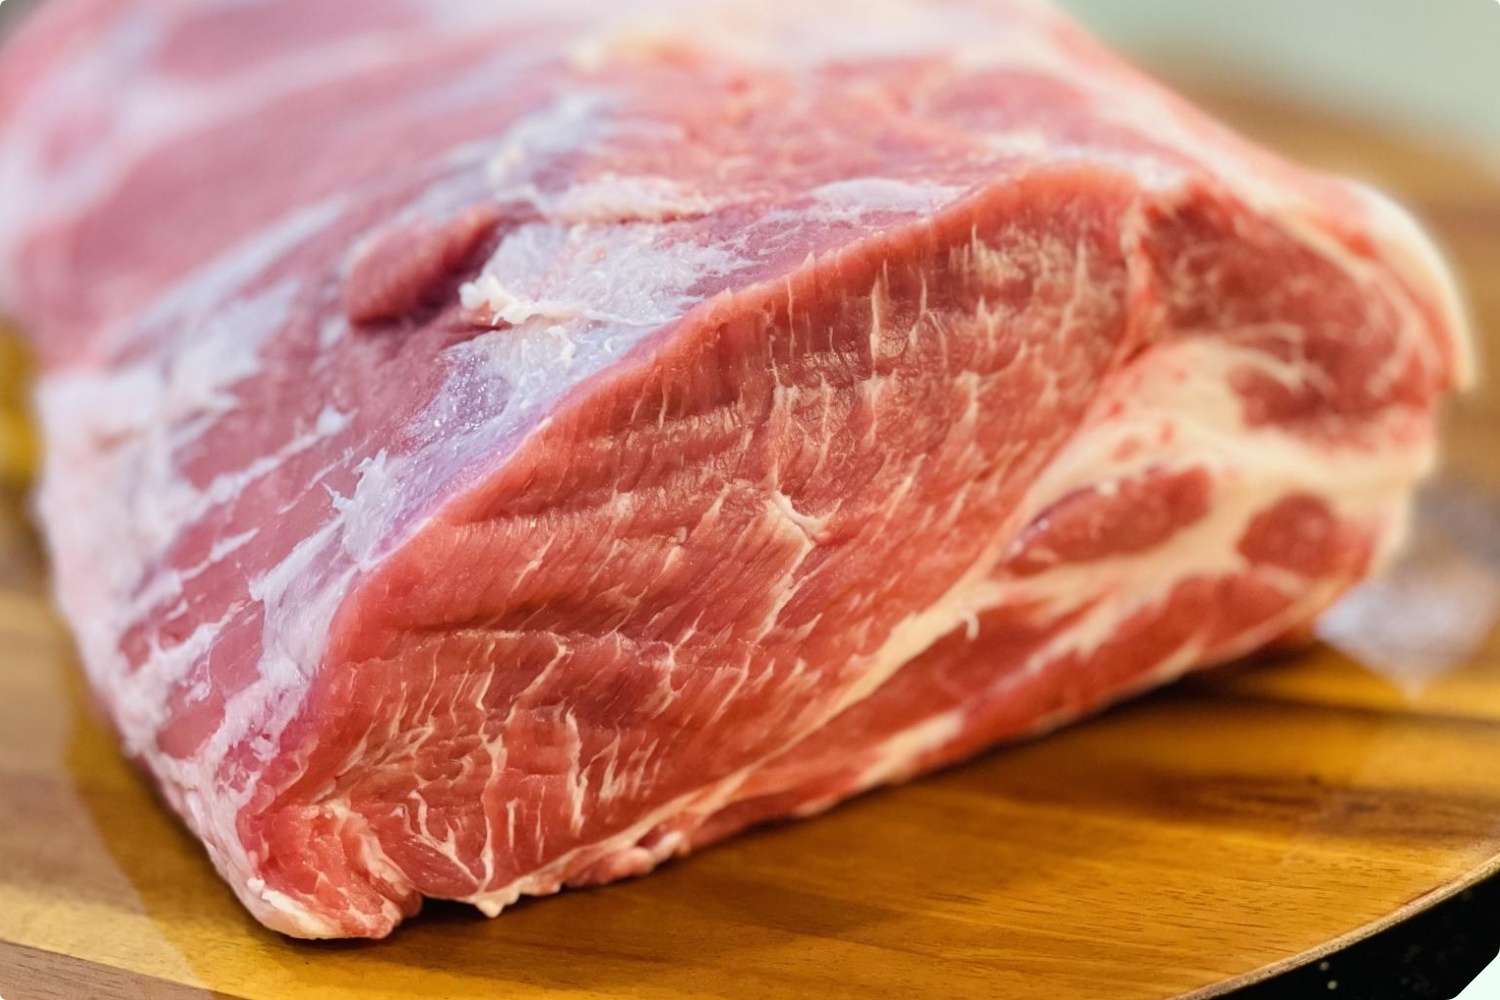 Mua thịt lợn nên chọn miếng sẫm hay nhạt màu? Cứ nhìn kỹ 3 điểm, người bán thịt tài mấy cũng không lừa được bạn - 9